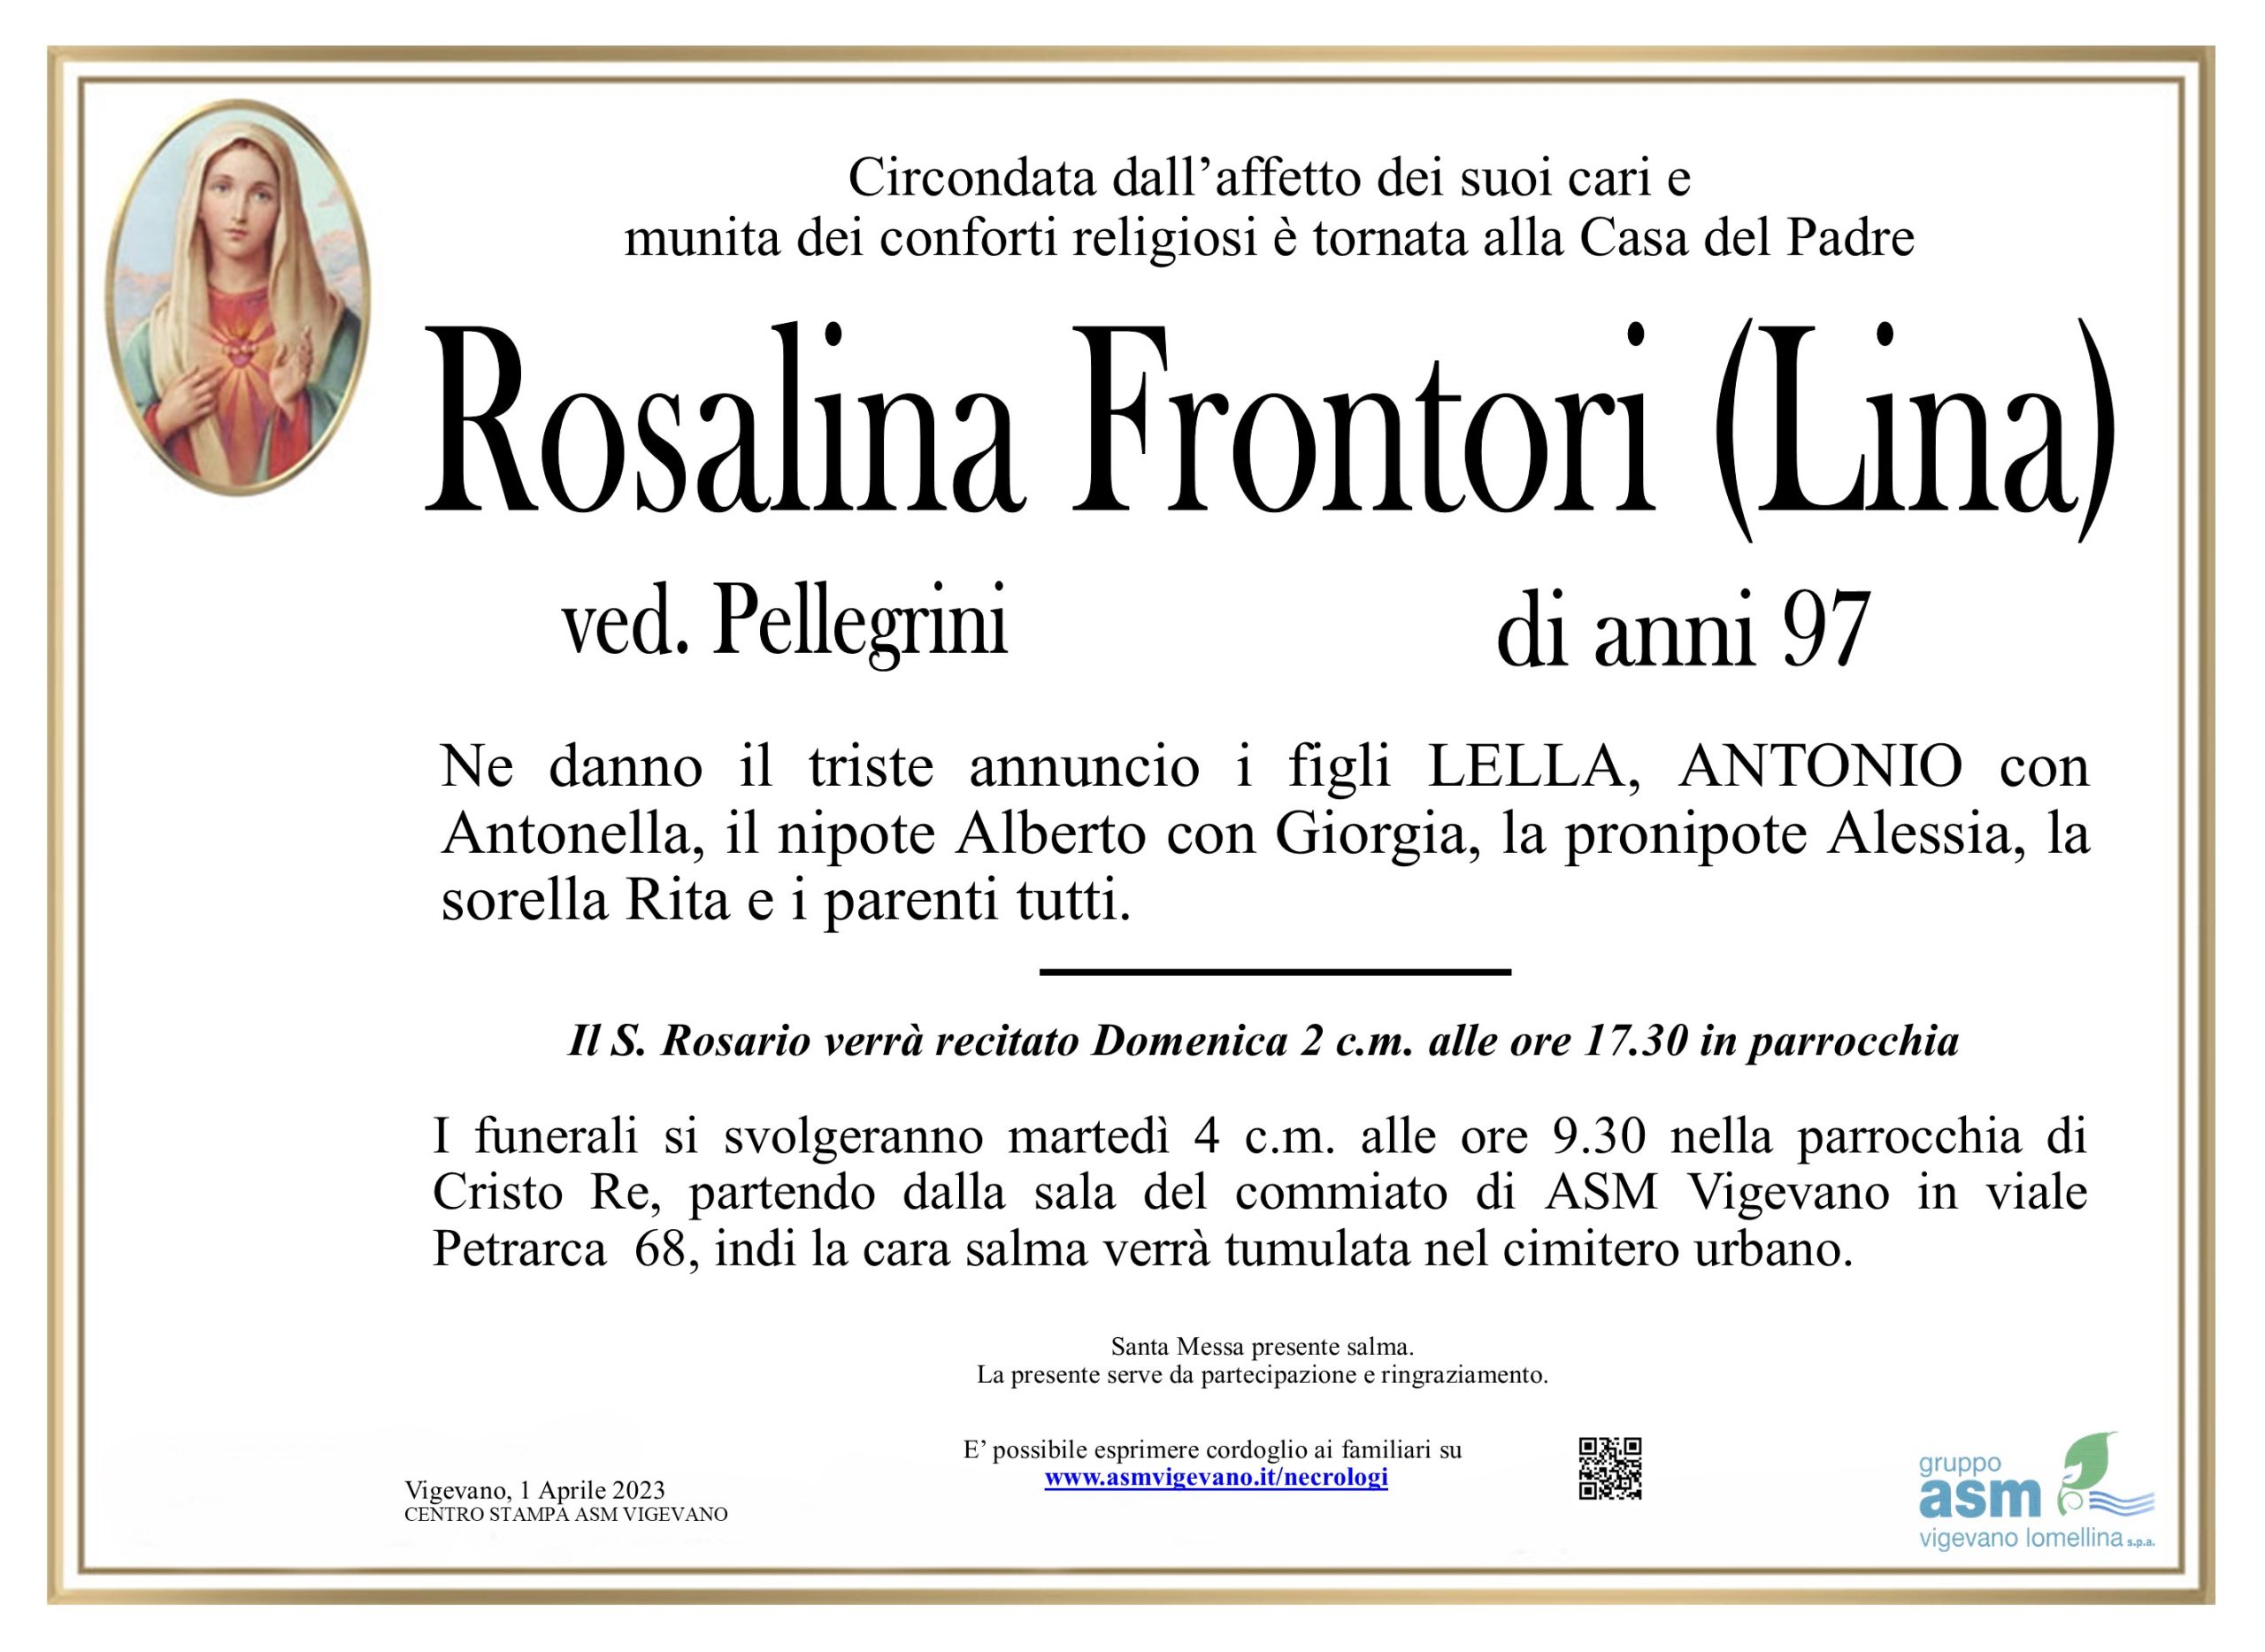 Rosalina Frontori